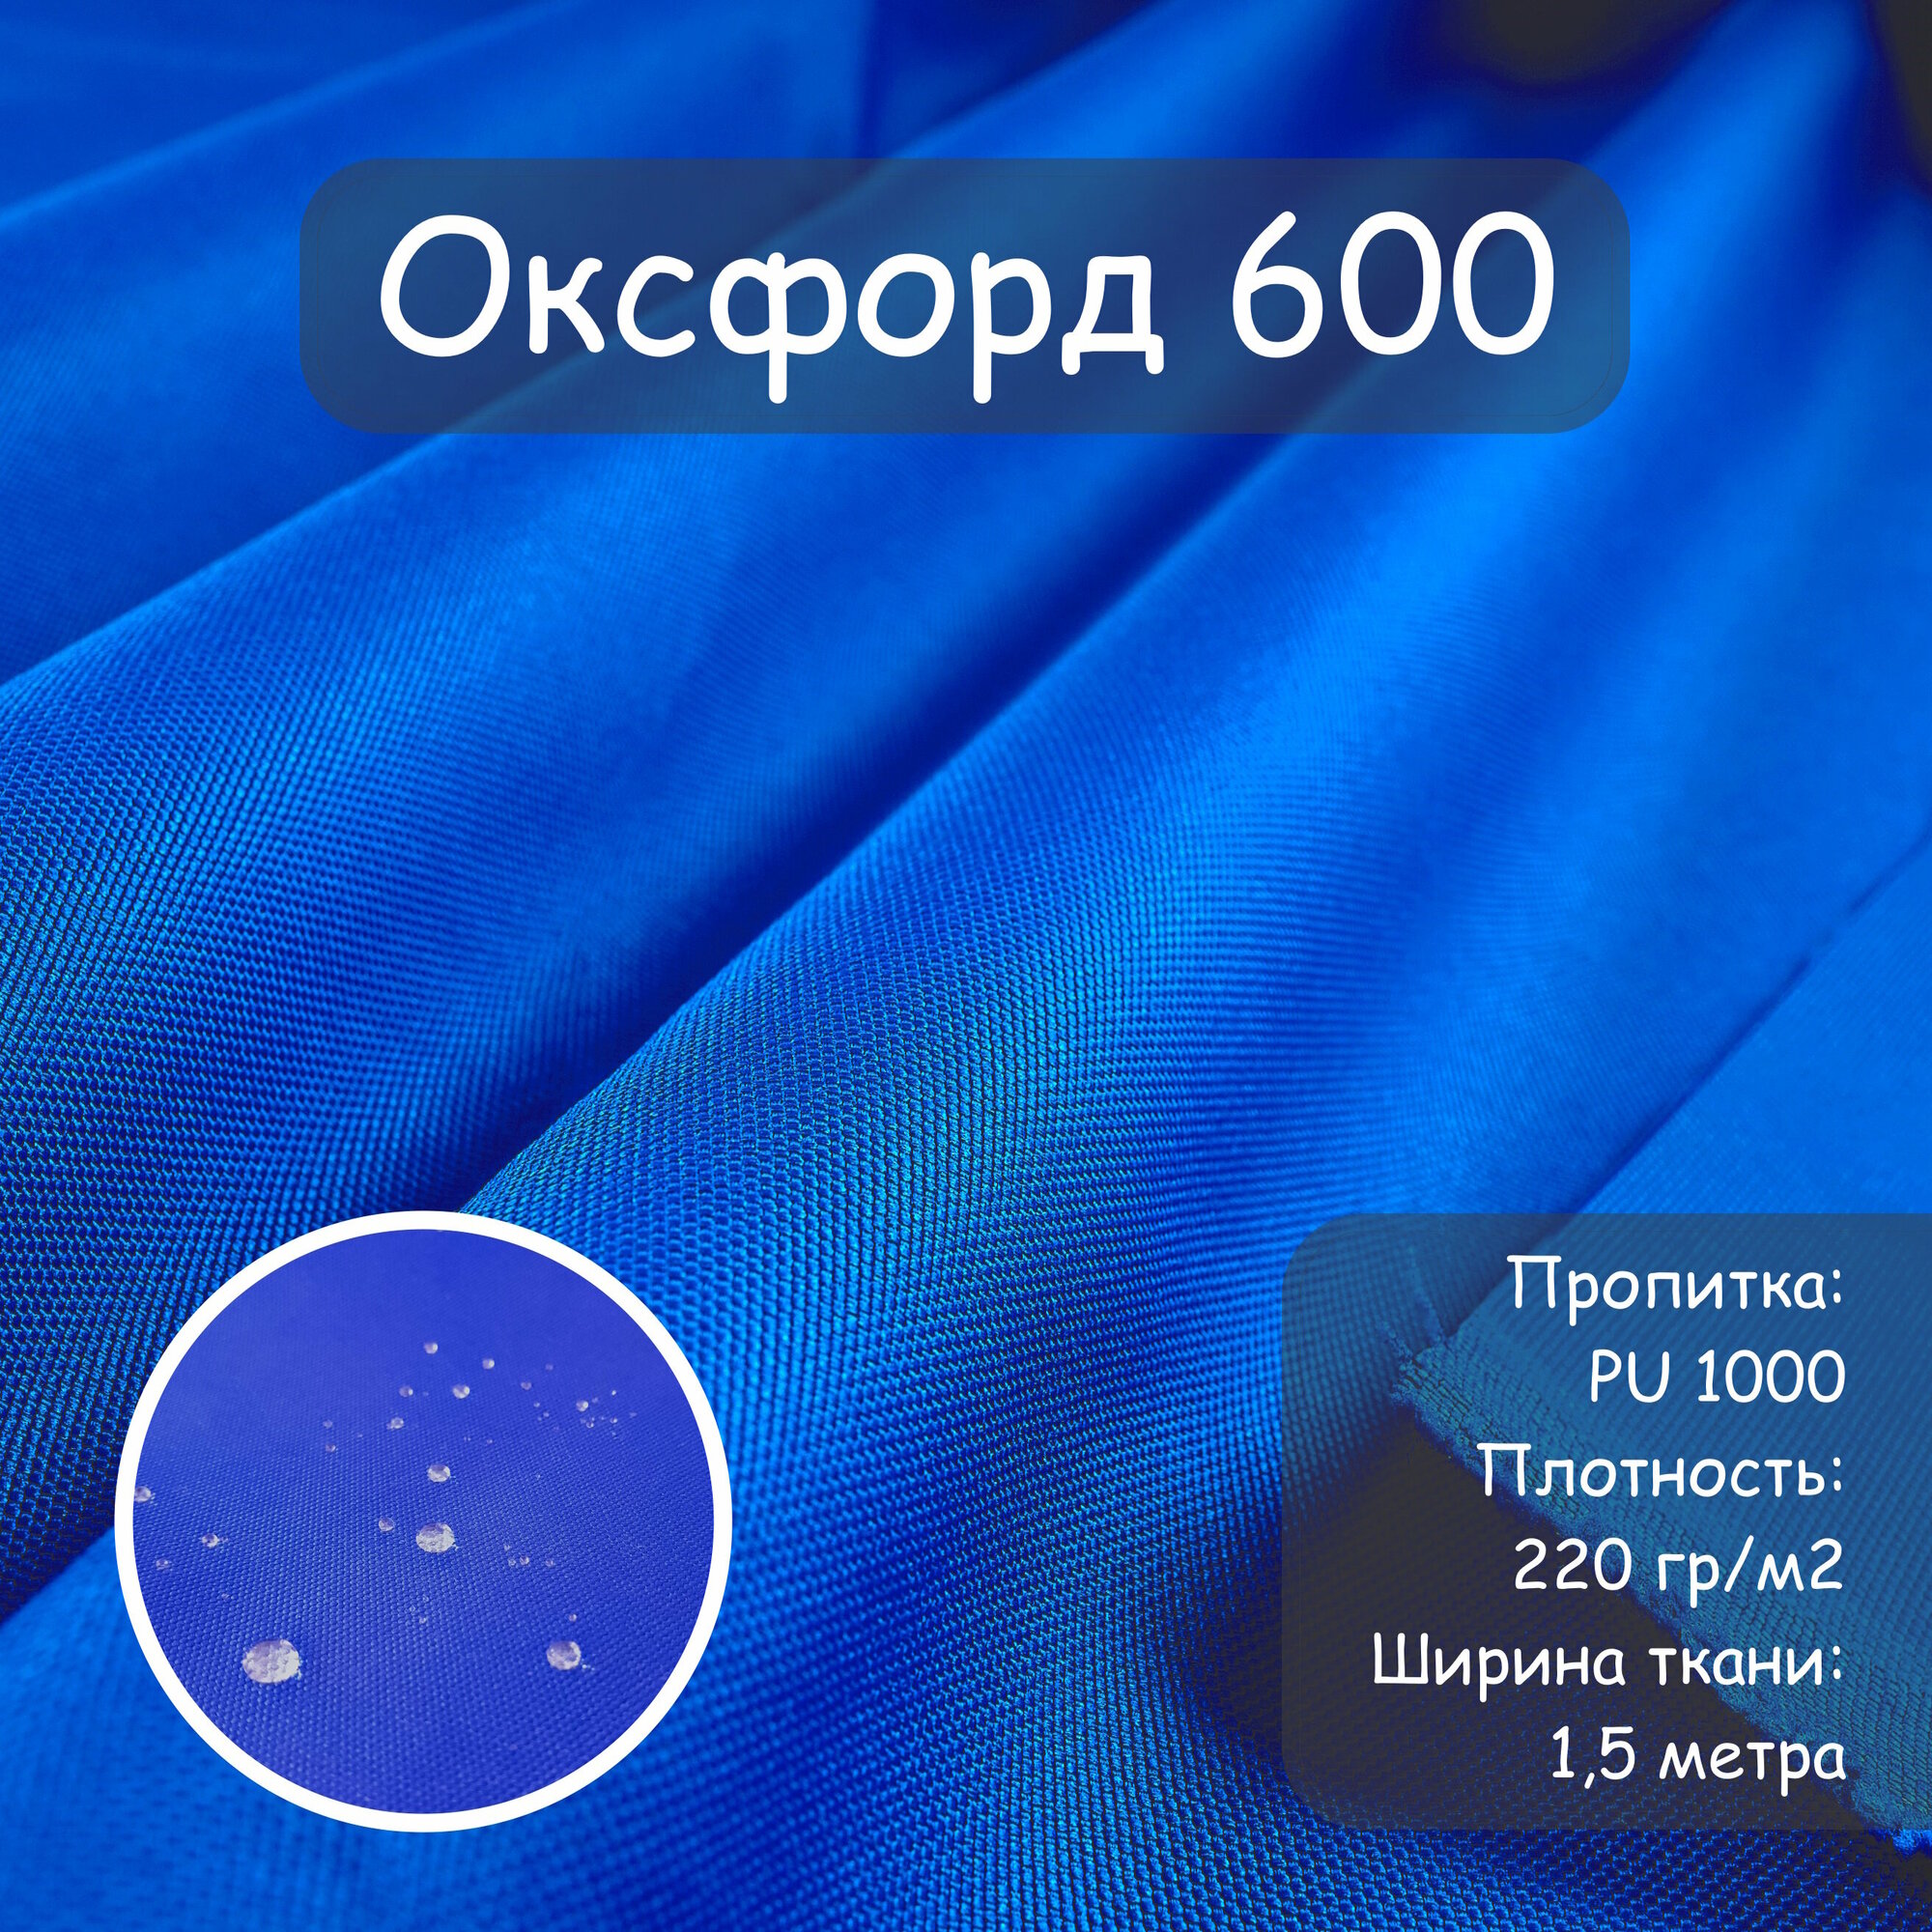 Ткань Оксфорд 600 PU (ПУ), цвет синий, василек, водоотталкивающая, ширина 150 см, цена за пог. метр